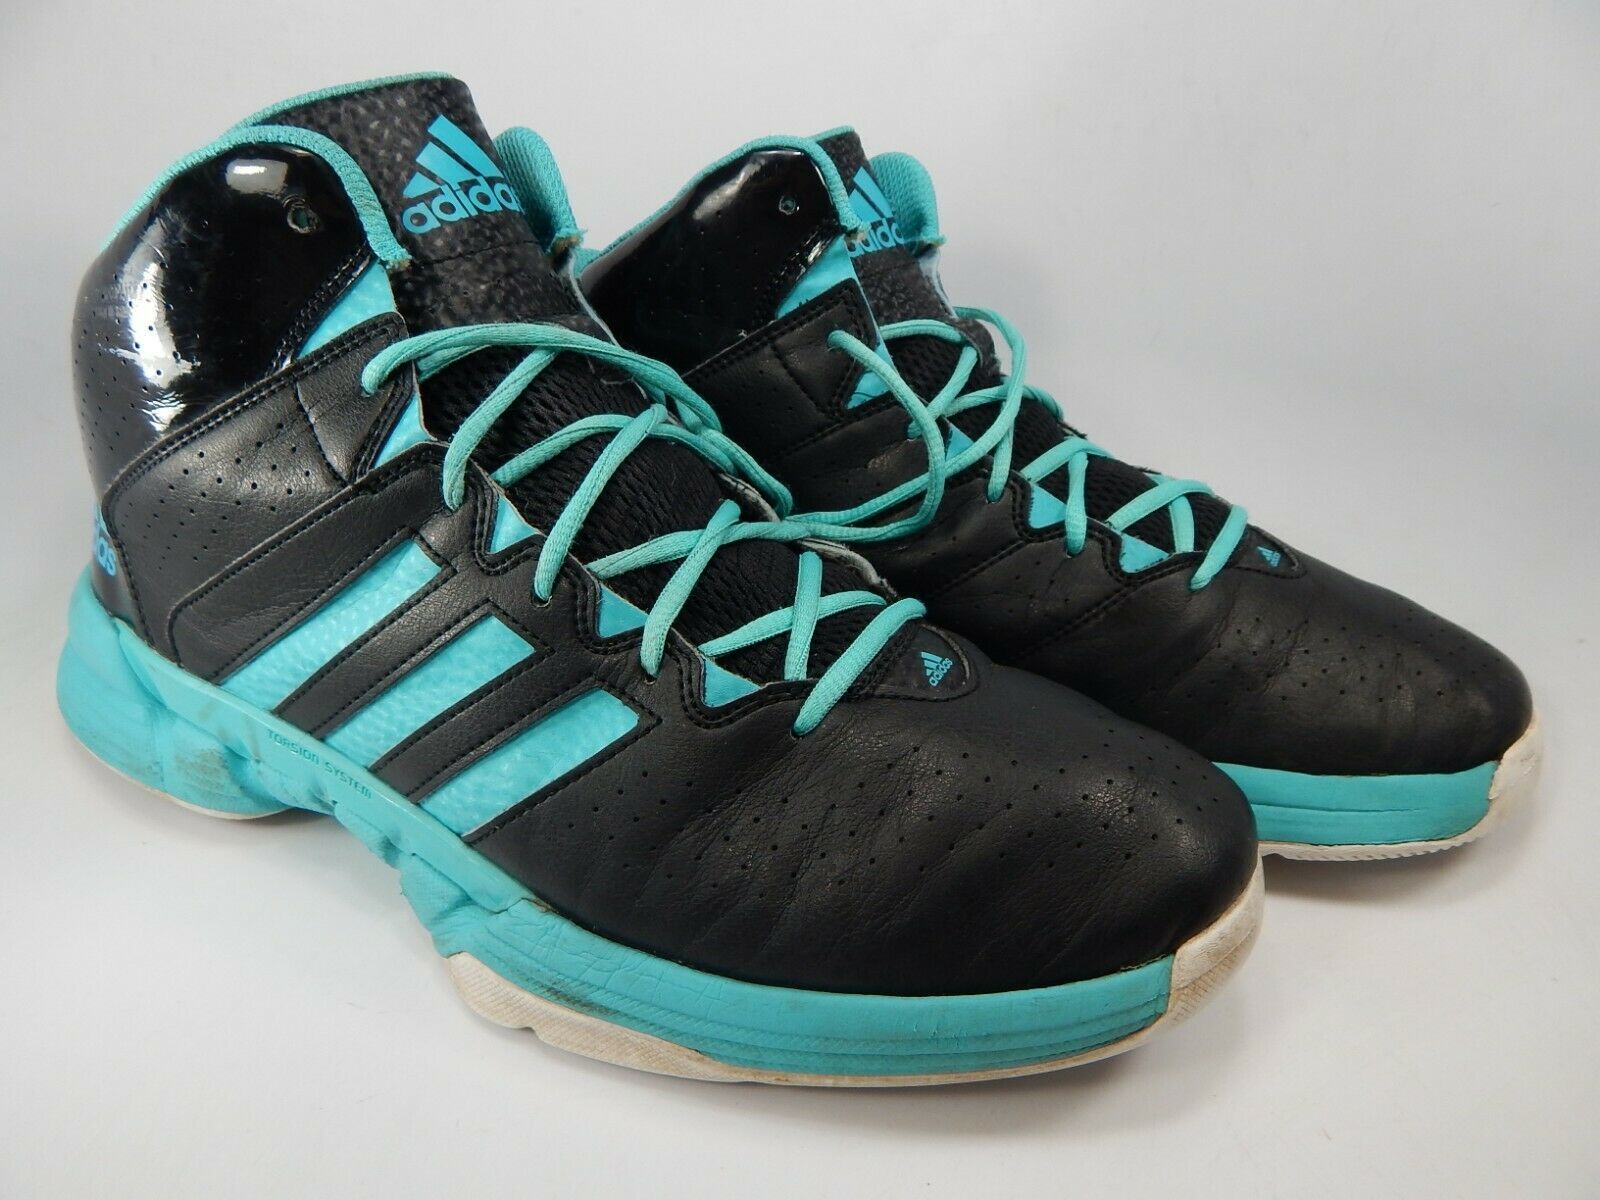 Adidas Cross 'Em 3 Size 12 M (D) EU 46 2/3 Men's Basketball Shoes Black ...